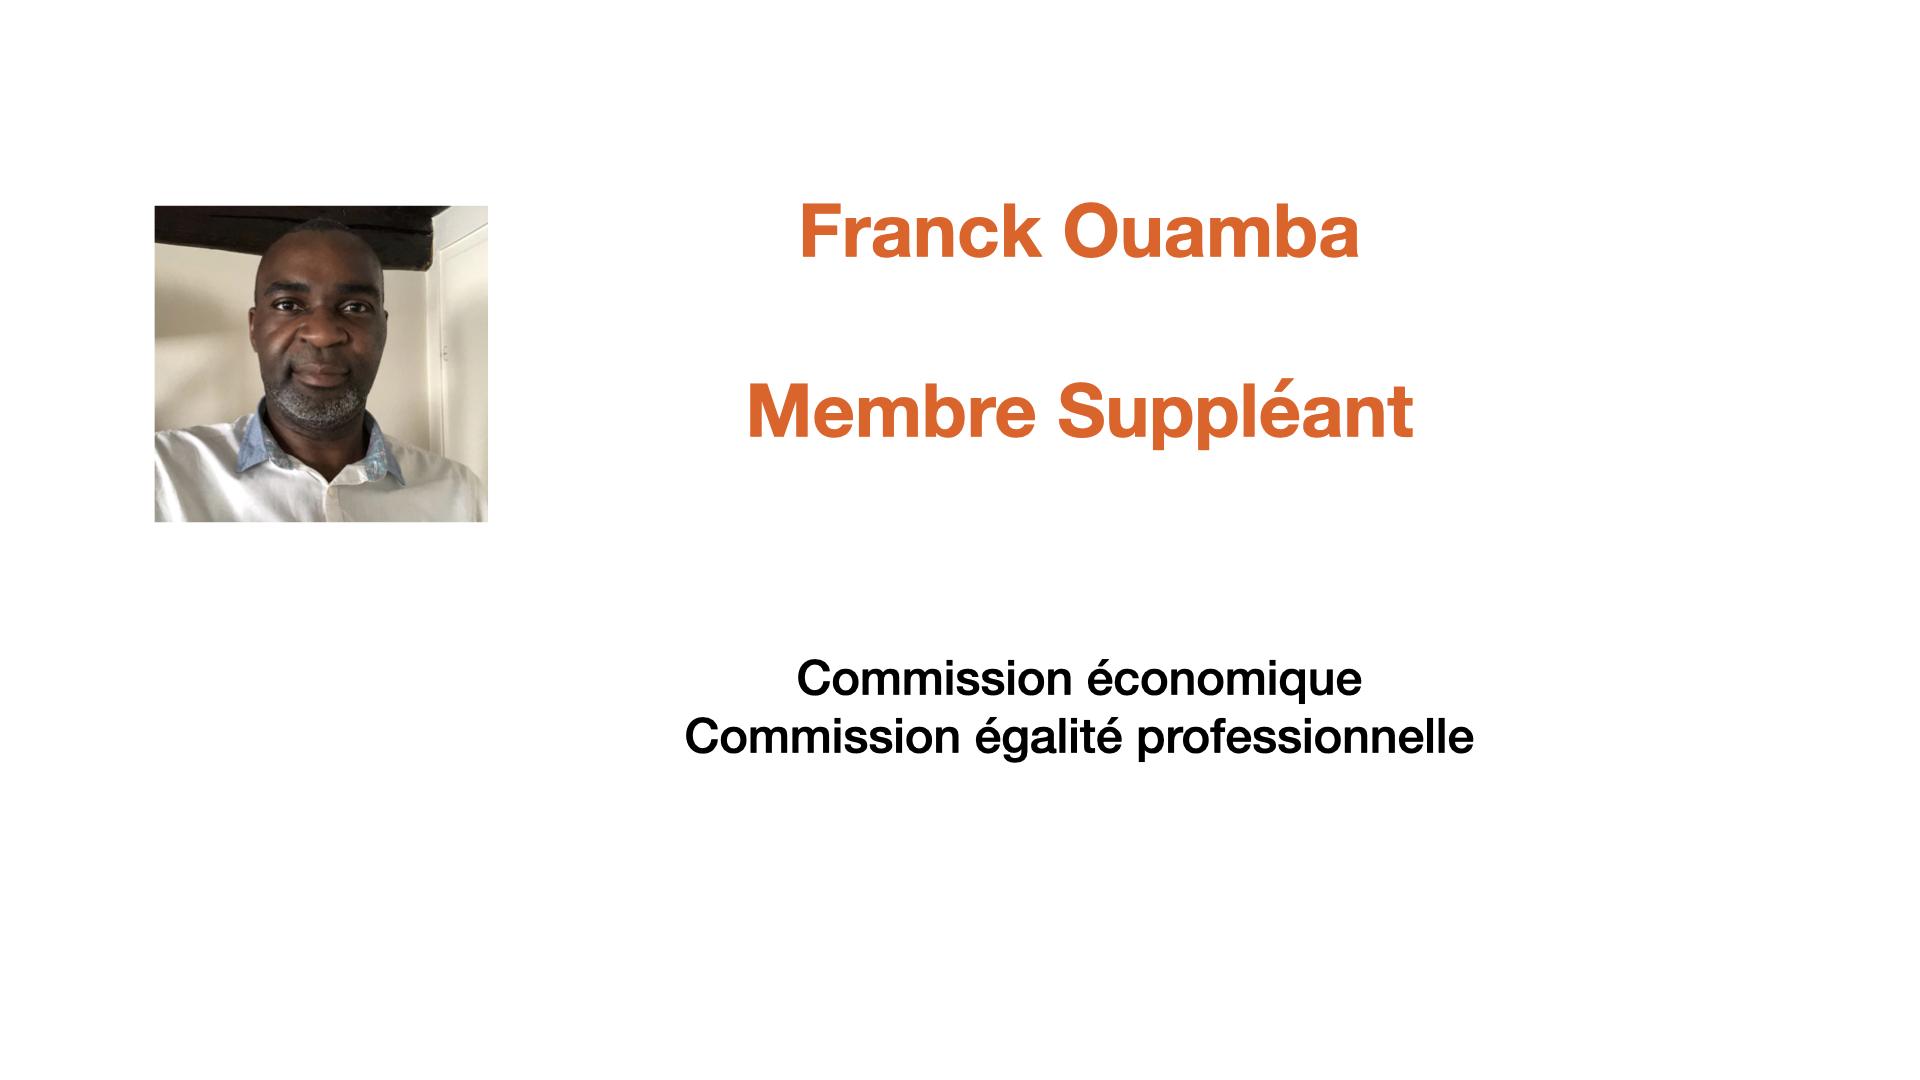 Franck Ouamba